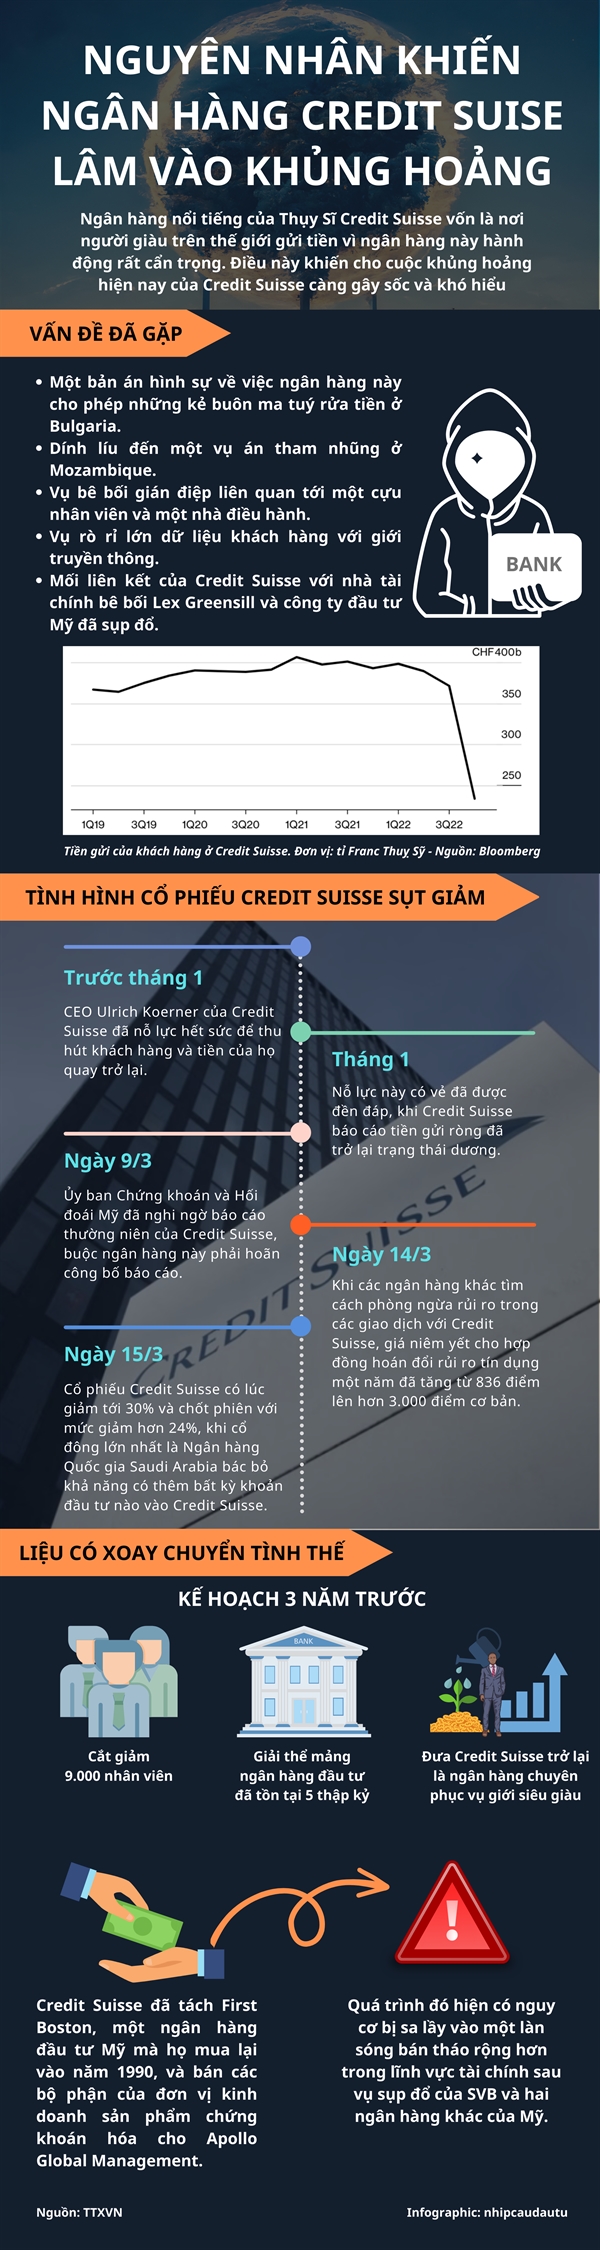 [Infographic] Nguyen nhan khien ngan hang Credit Suisse lam vao khung hoang